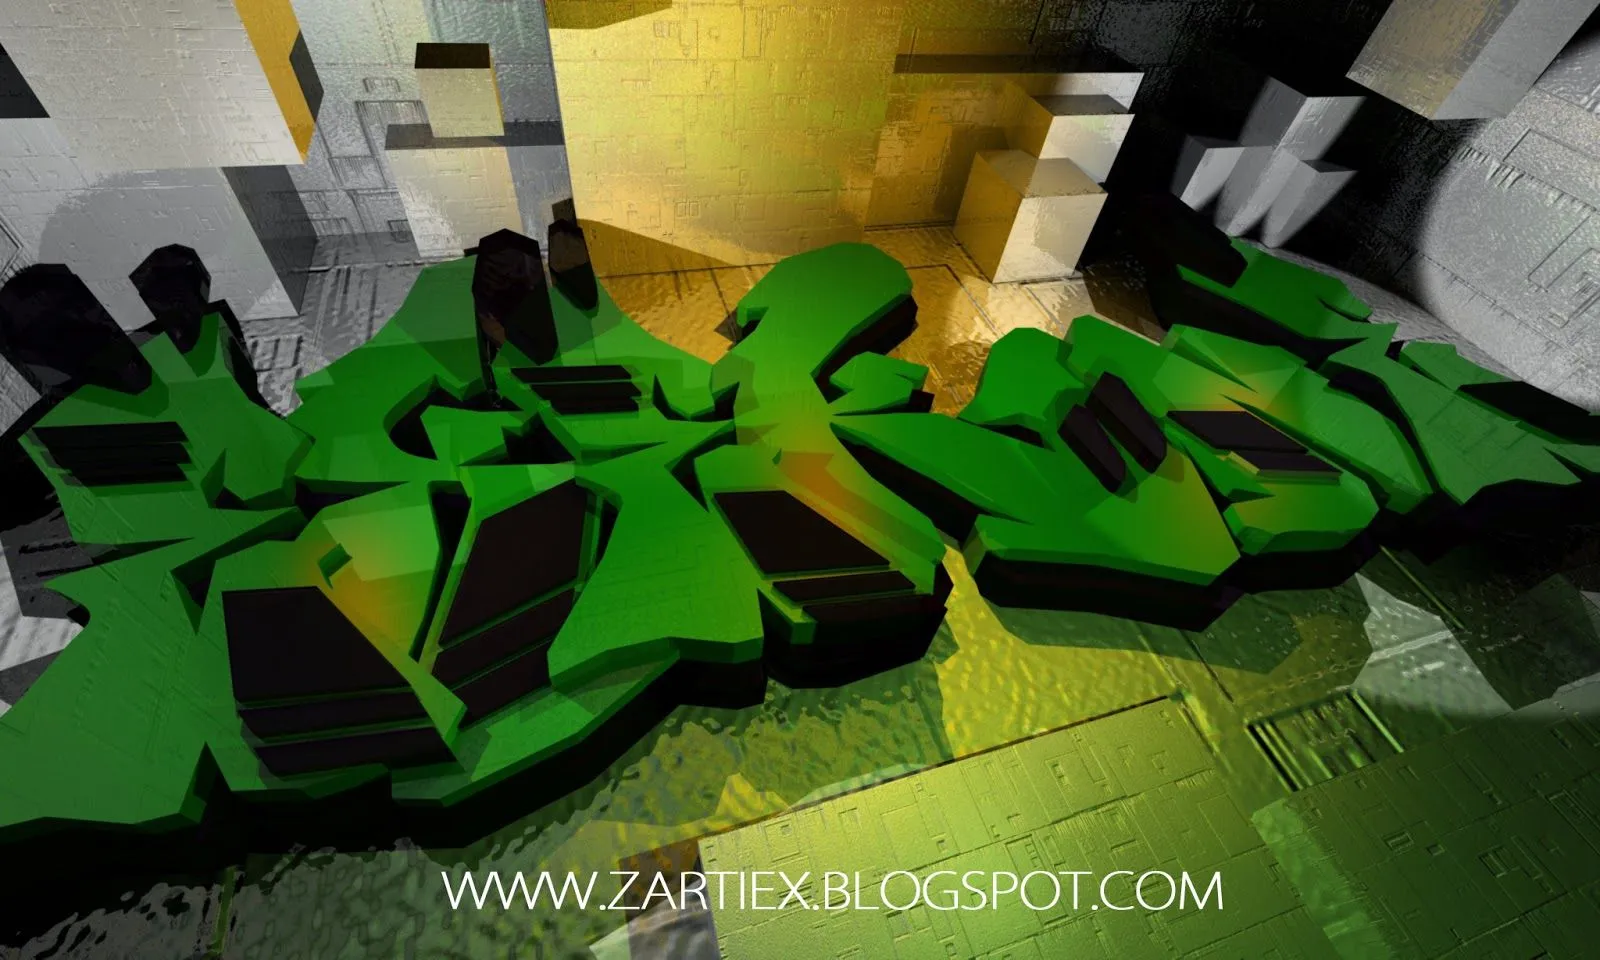 ZARTIEX: Letras de Graffiti - Abecedarios de Graffitis en 3D 2014 ...